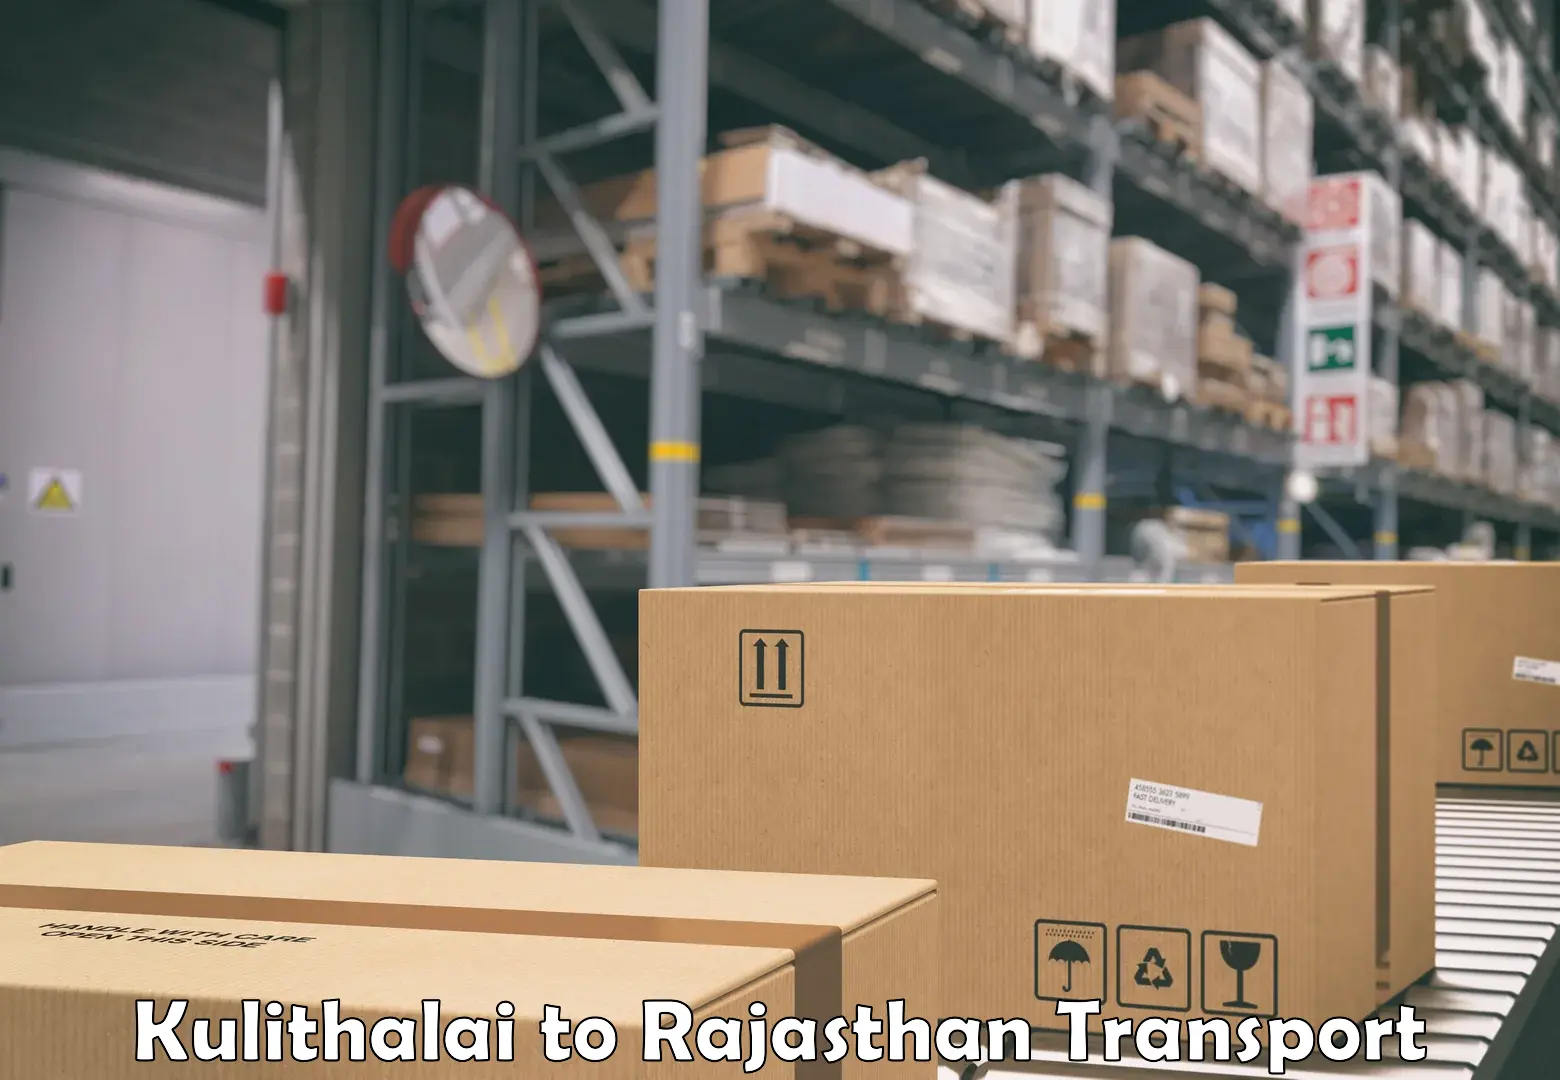 Truck transport companies in India Kulithalai to Mandphiya